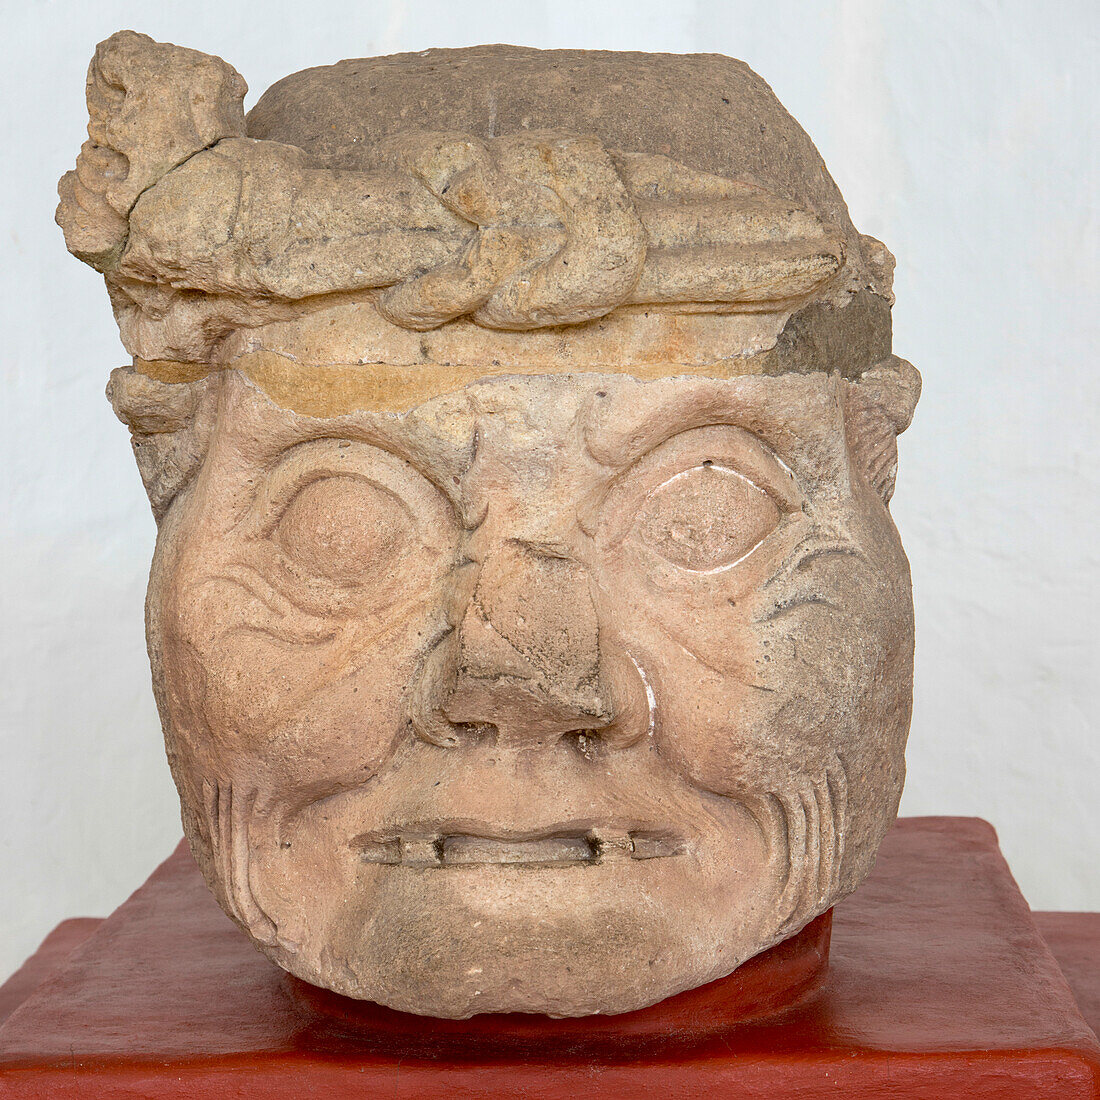 A Clay Artifact From A Maya Civilization At Copan Ruins; Copan, Honduras